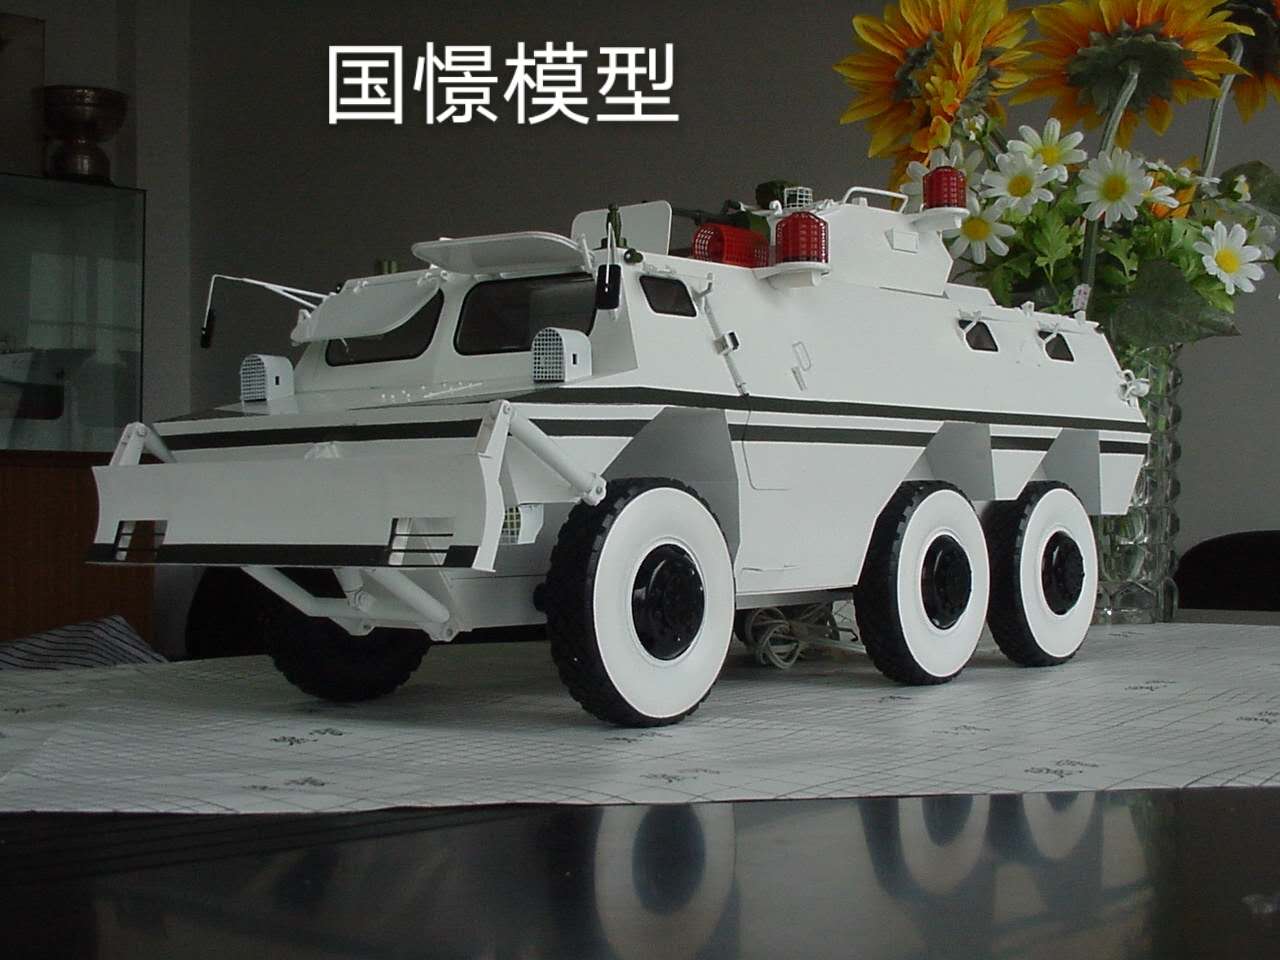 桦南县军事模型